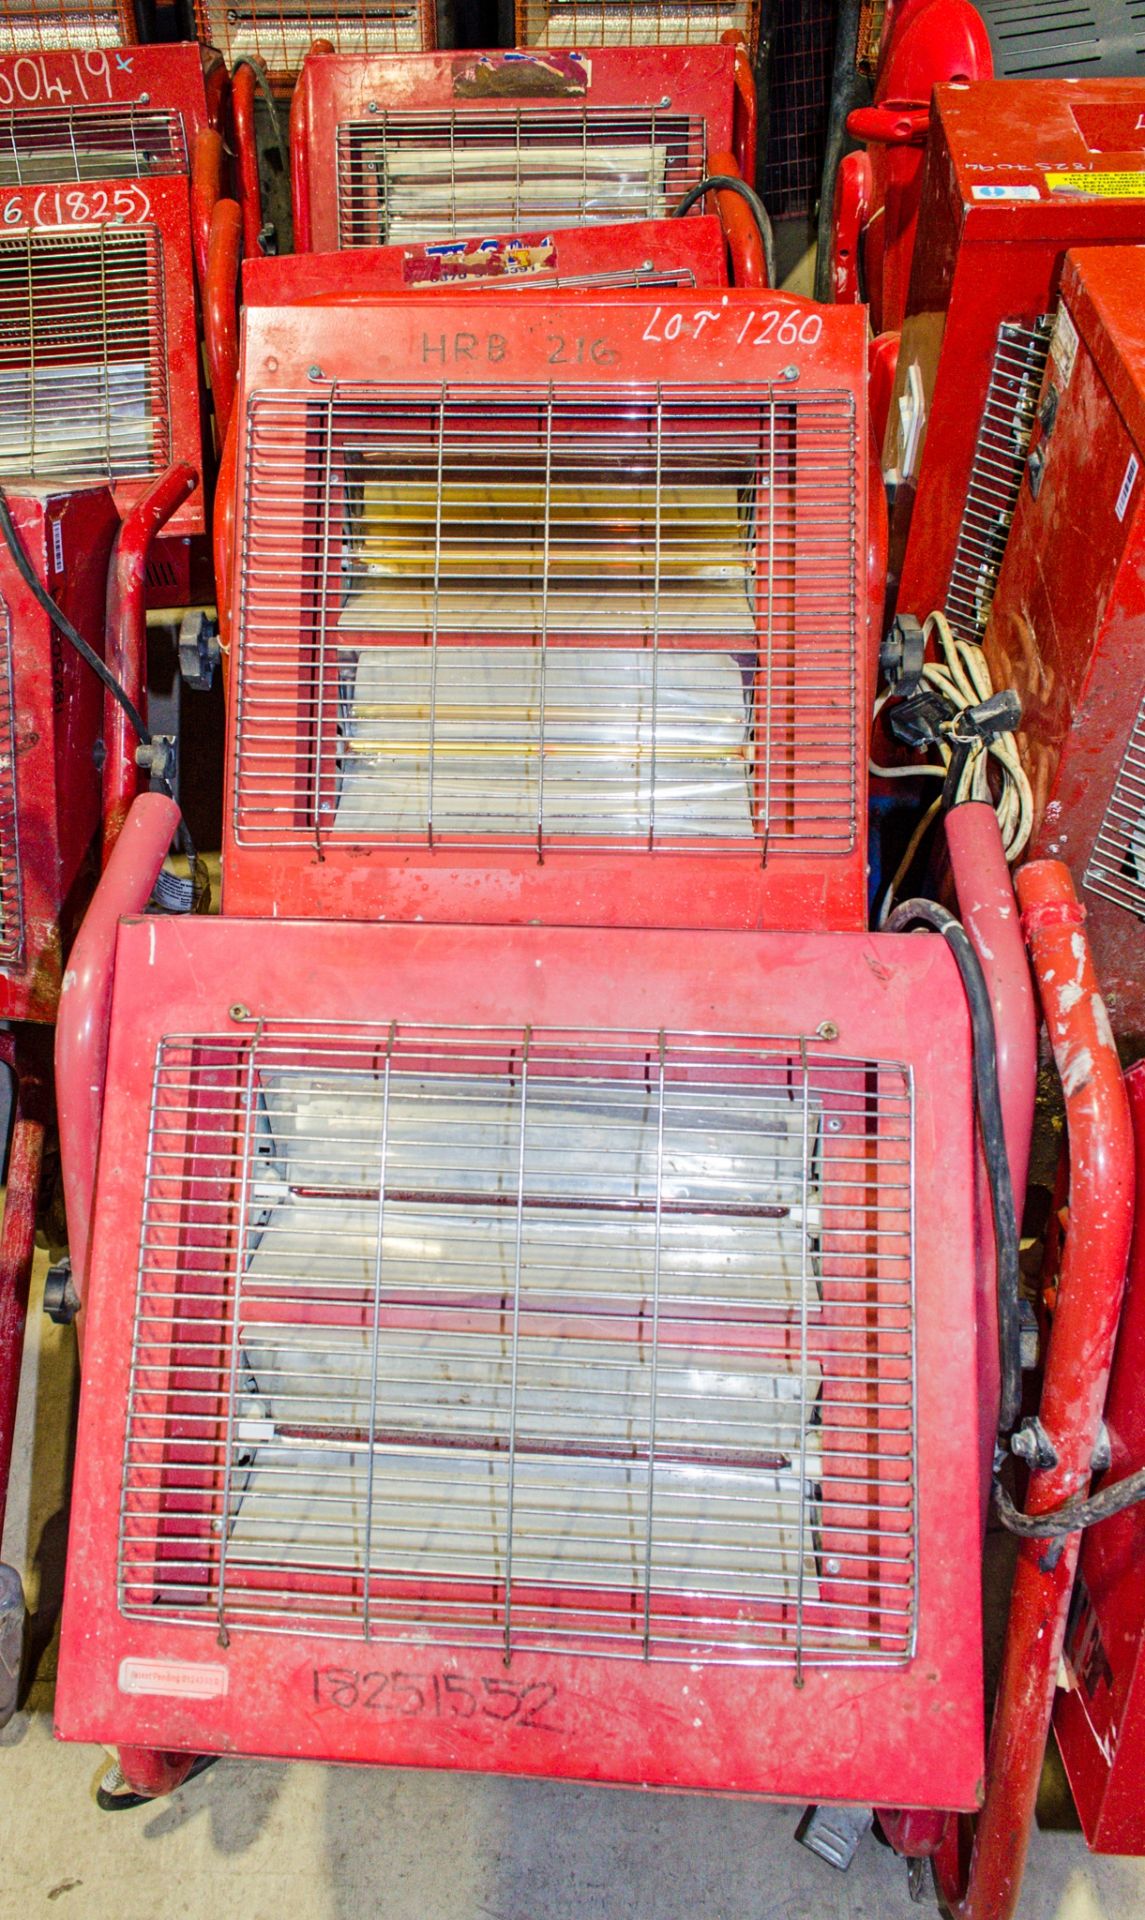 4 - 110v/240v infra red heaters ** Tubes missing **